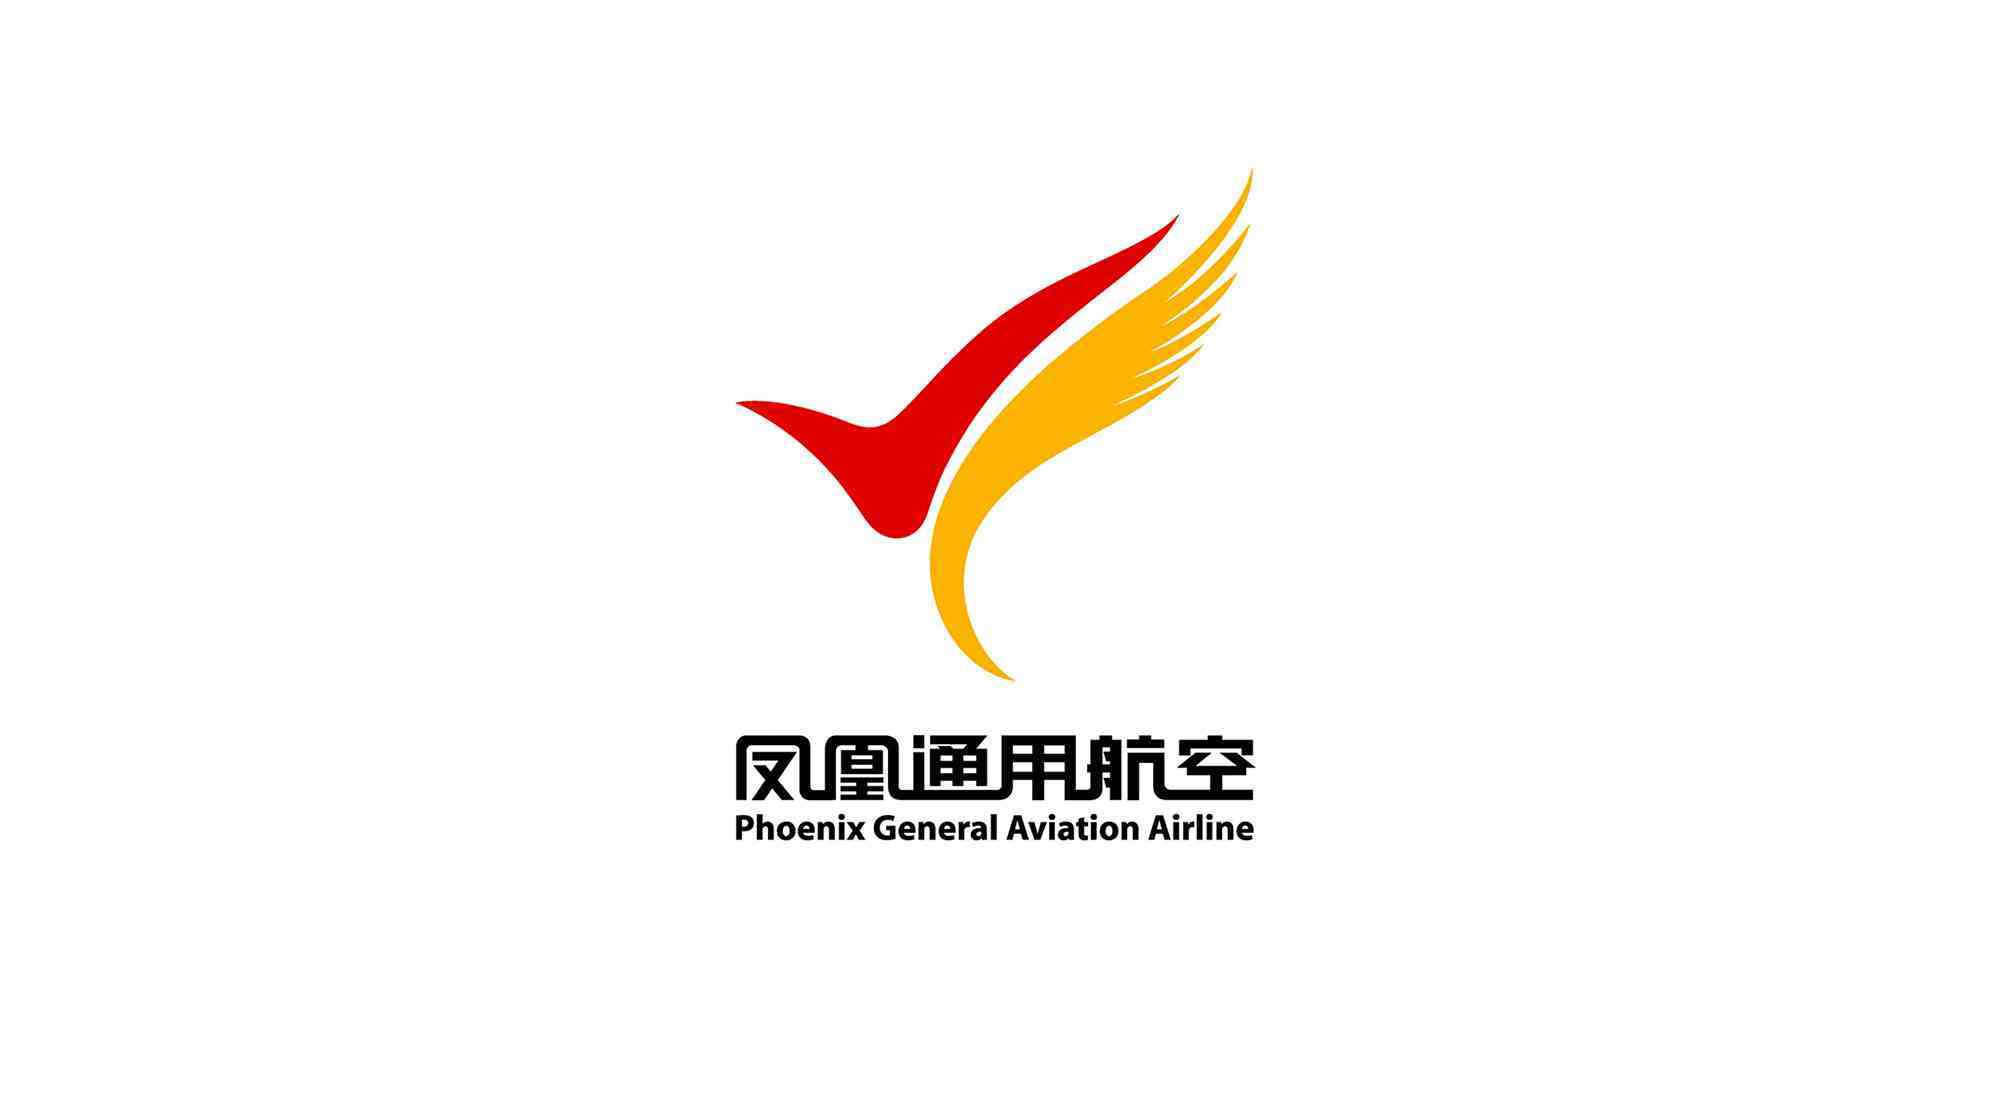 鳳凰通用航空航空公司logo設計圖片素材